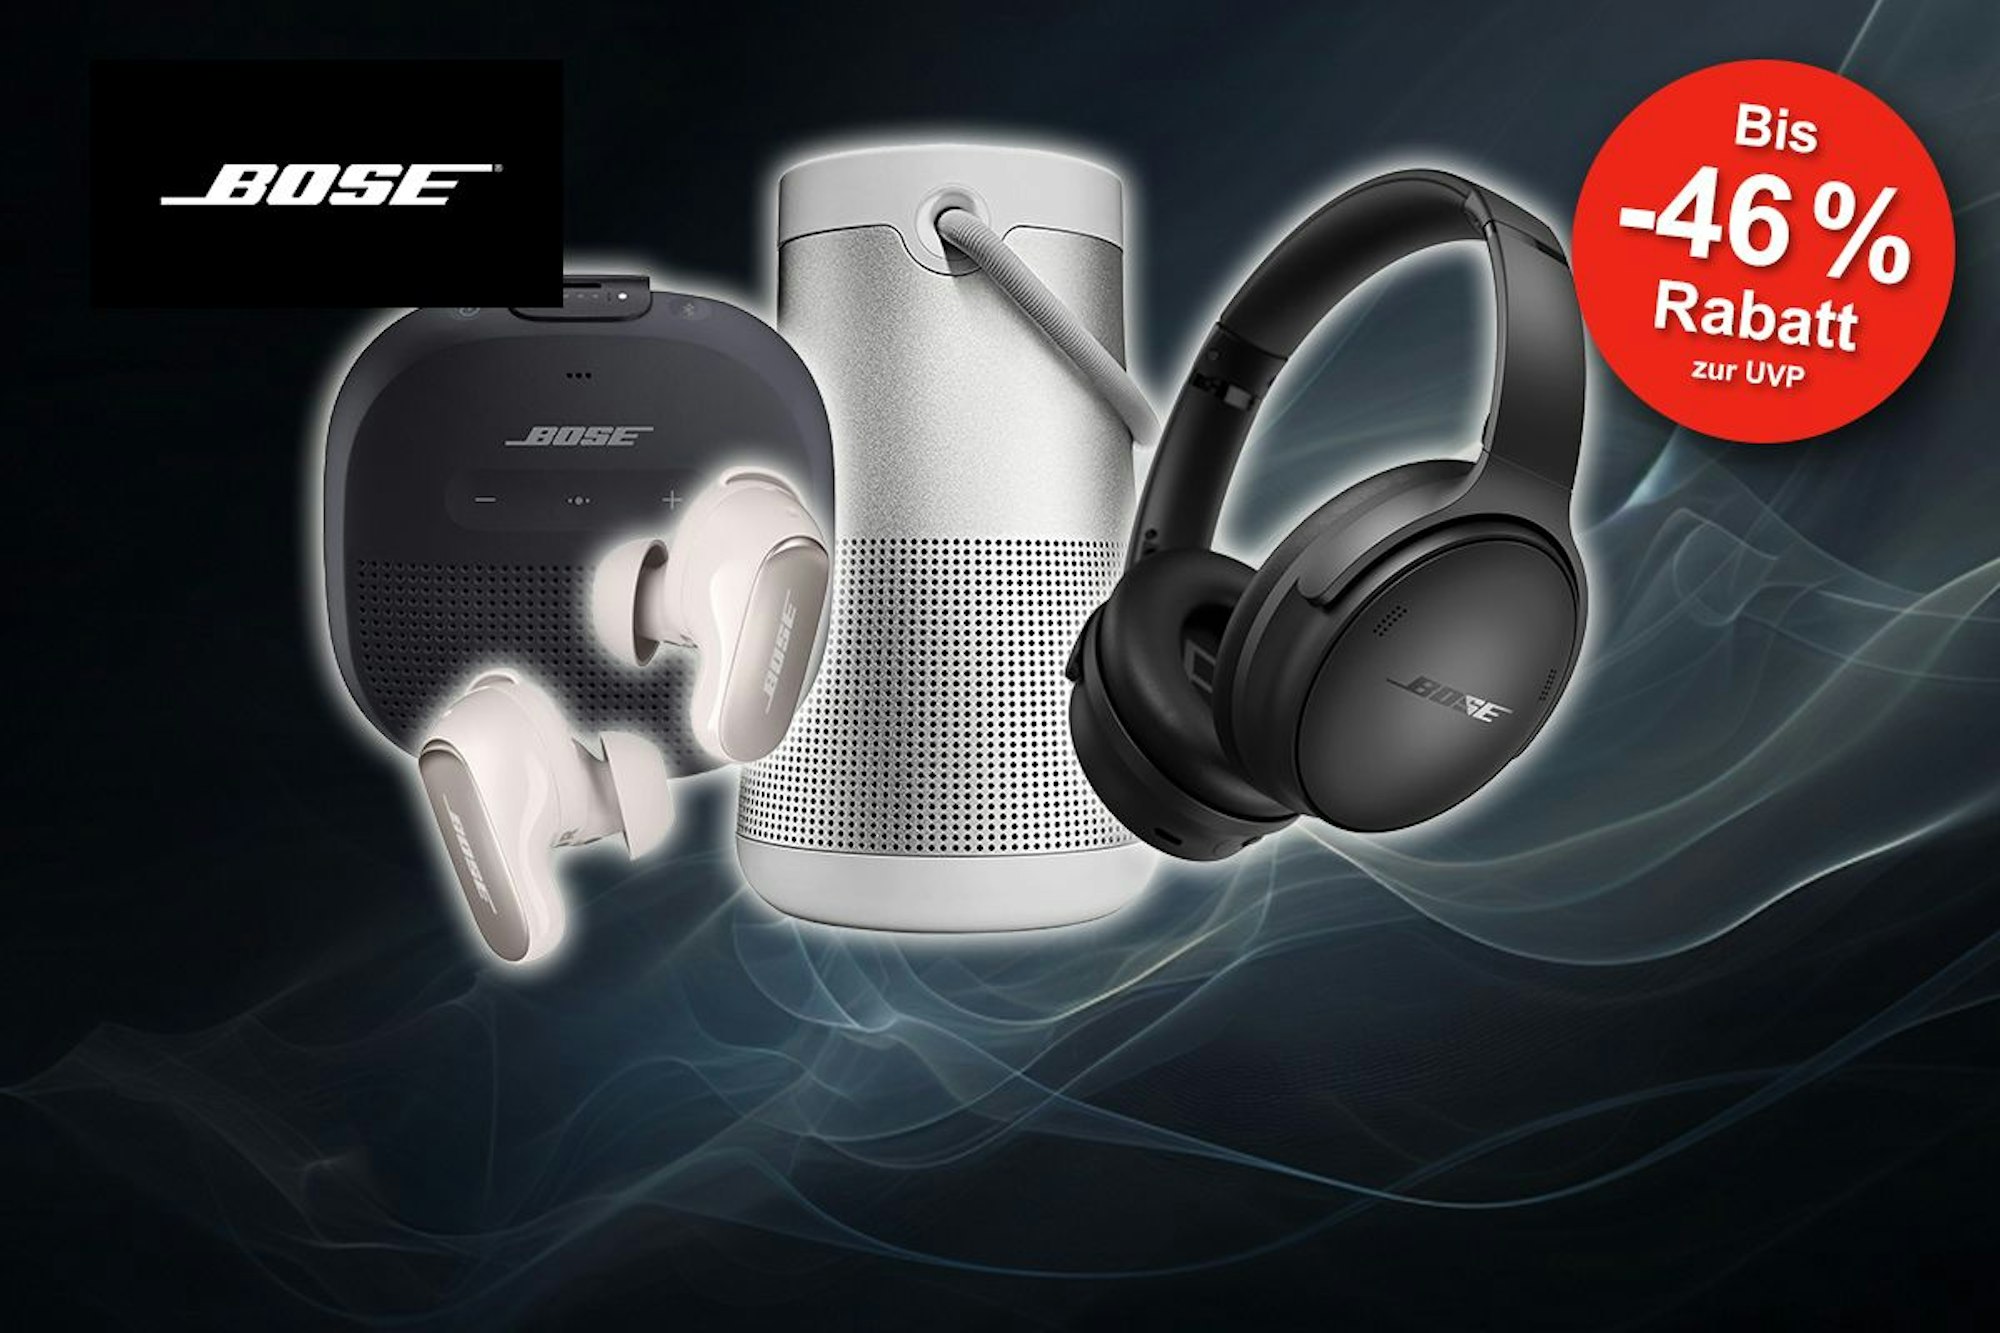 Bose Angebote bei Amazon – Jetzt bis zu 46% auf BOSE Audio Produkte sparen